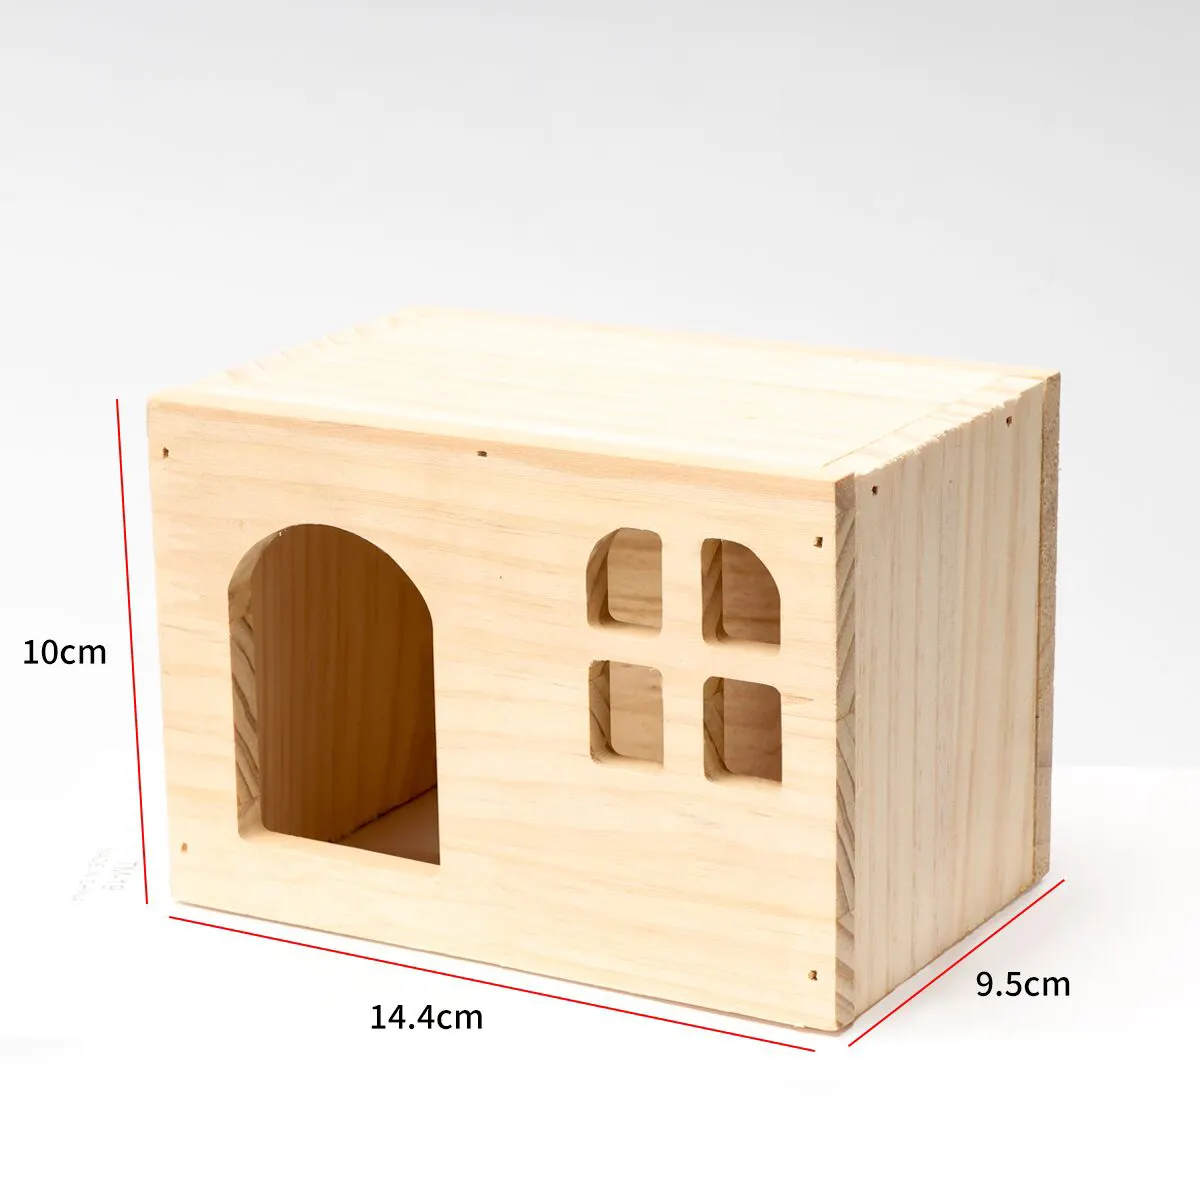 लकड़ी का हम्सटर घोंसला ठोस लकड़ी का छोटा घर खिलौना लकड़ी का घर